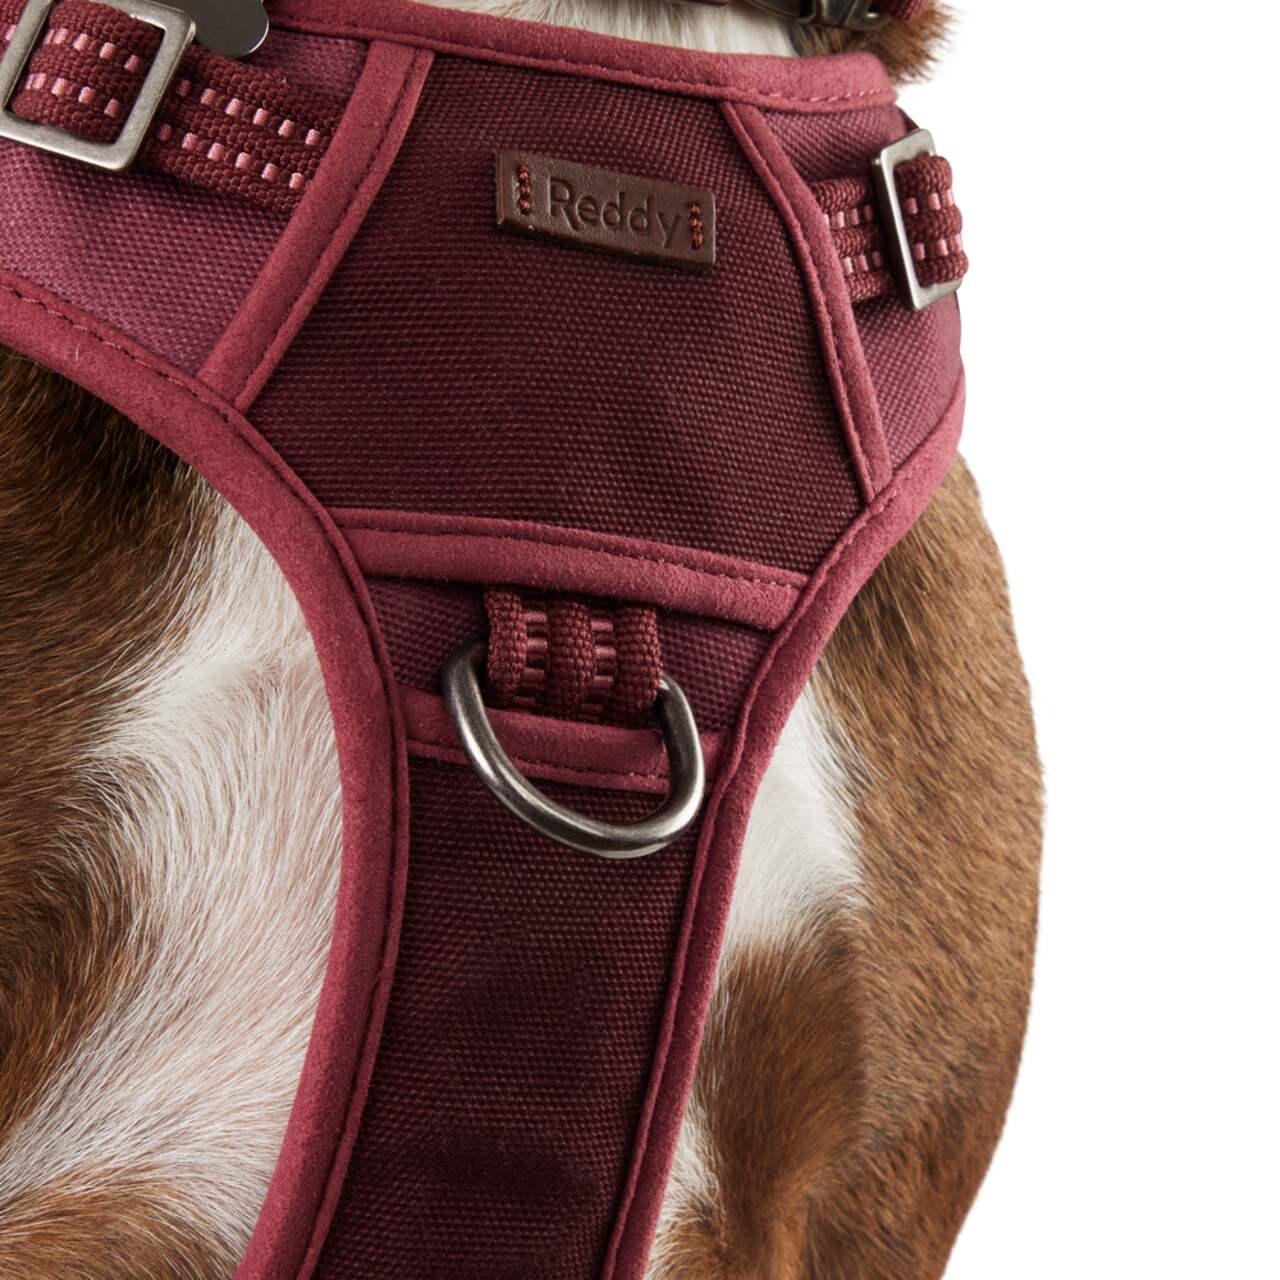 Reddy Burgundy Canvas Dog Harness, Medium